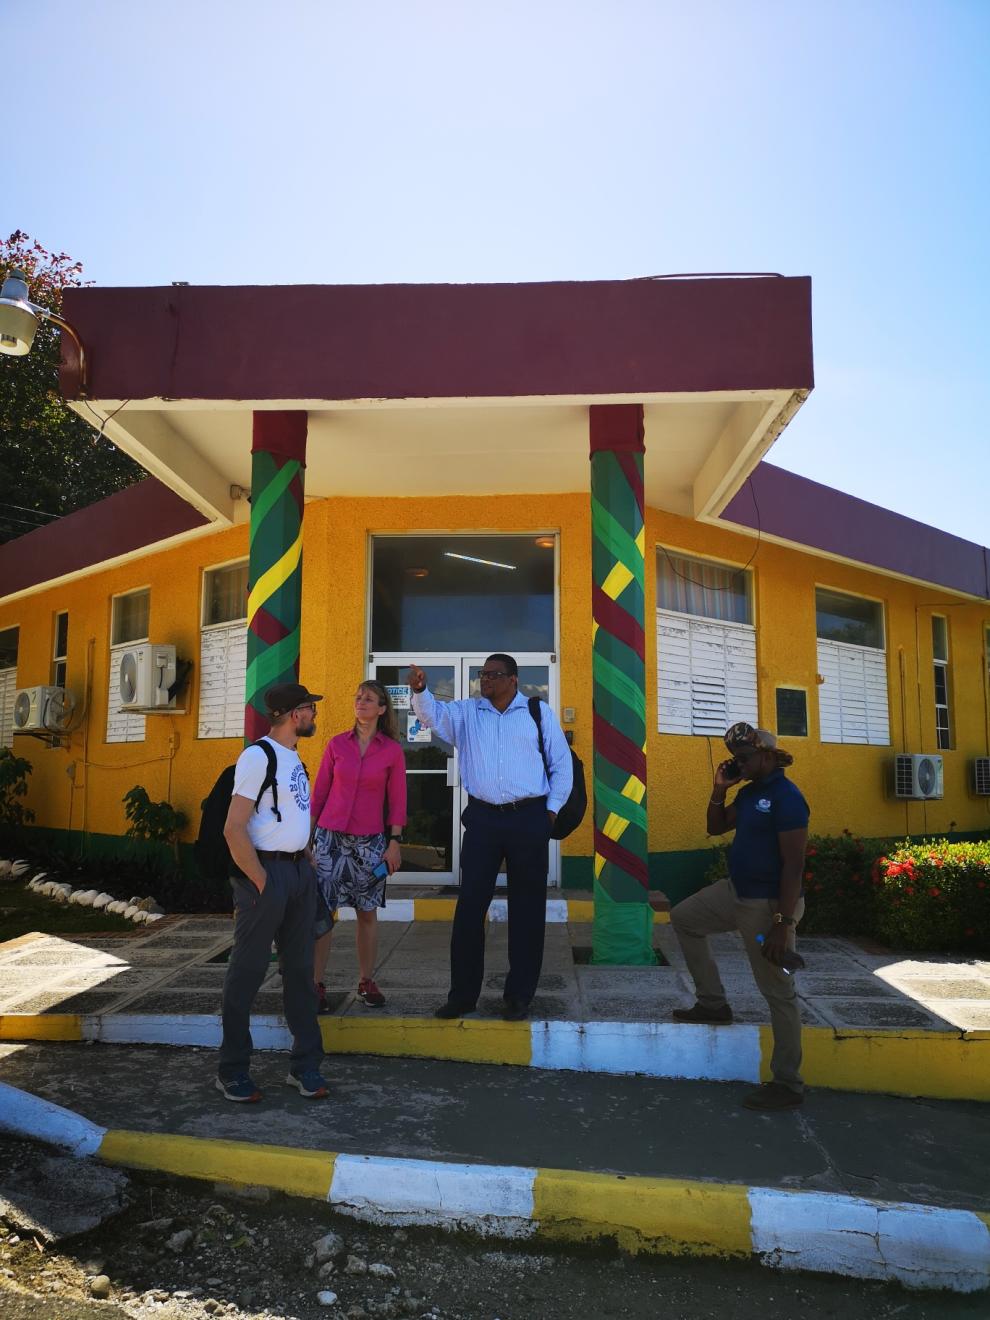 Drei Personen stehen vor einem farbenfrohen Gebäude mit dekorativen Säulen. Sie sind in eine Diskussion vertieft.